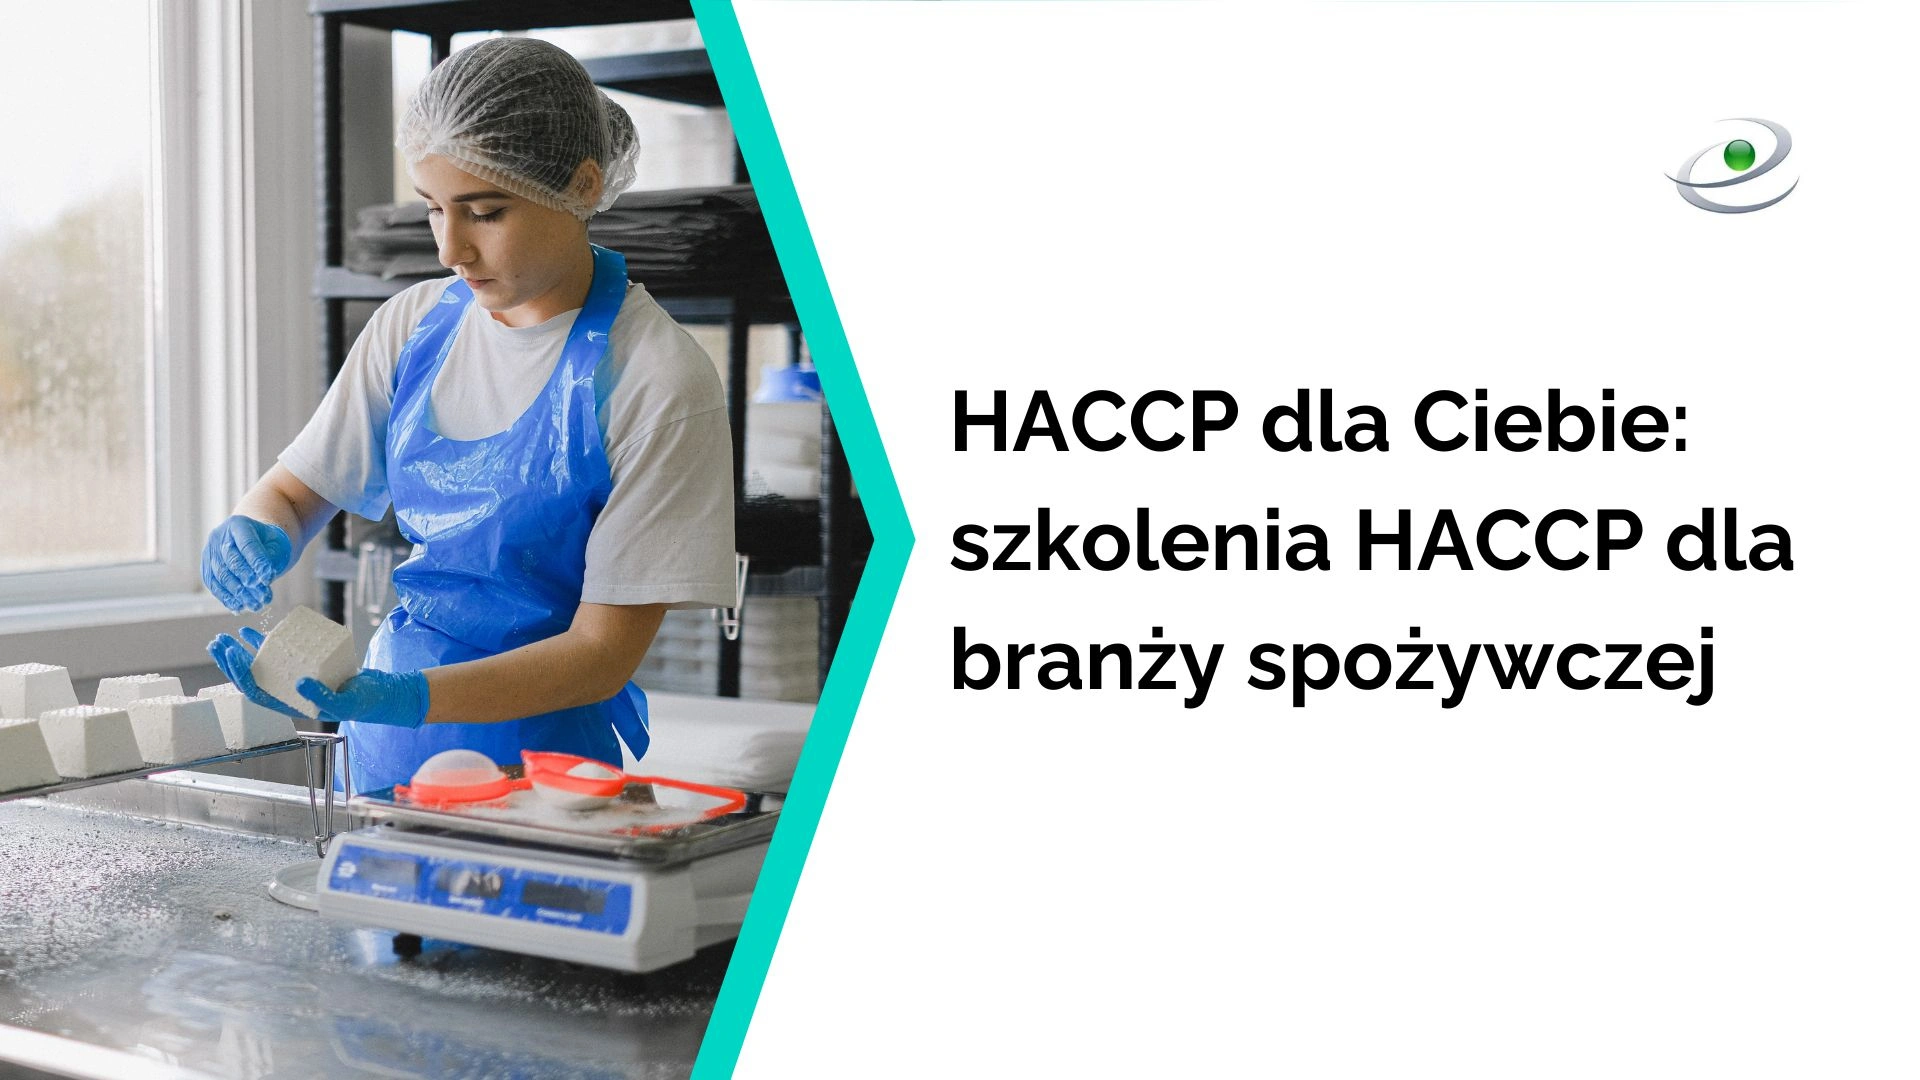 HACCP dla Ciebie - szkolenia dla branży spożywczej 